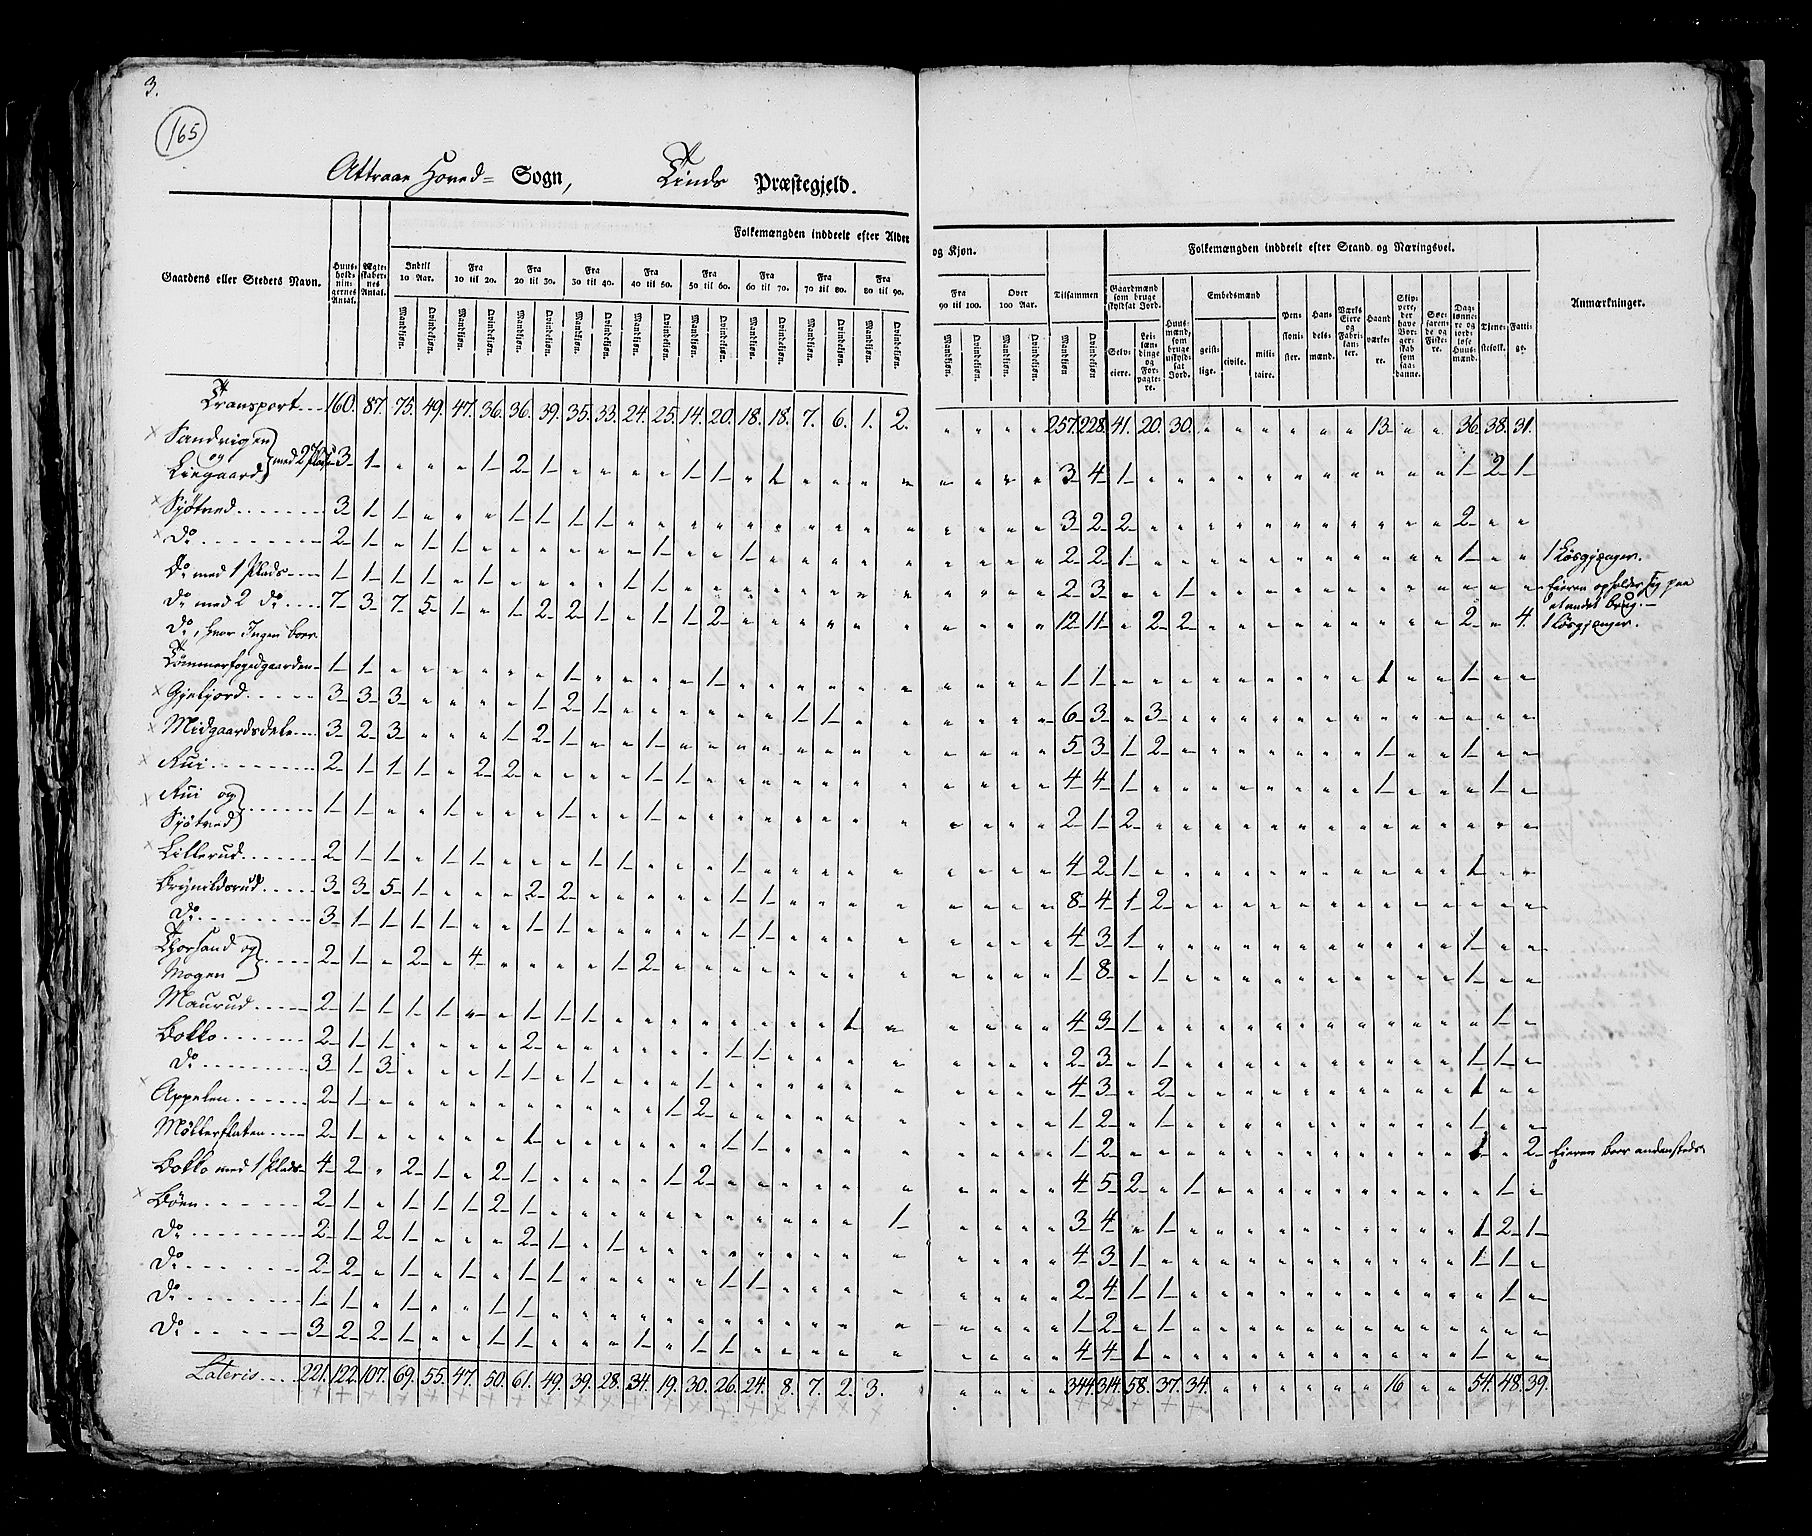 RA, Census 1825, vol. 9: Bratsberg amt, 1825, p. 165